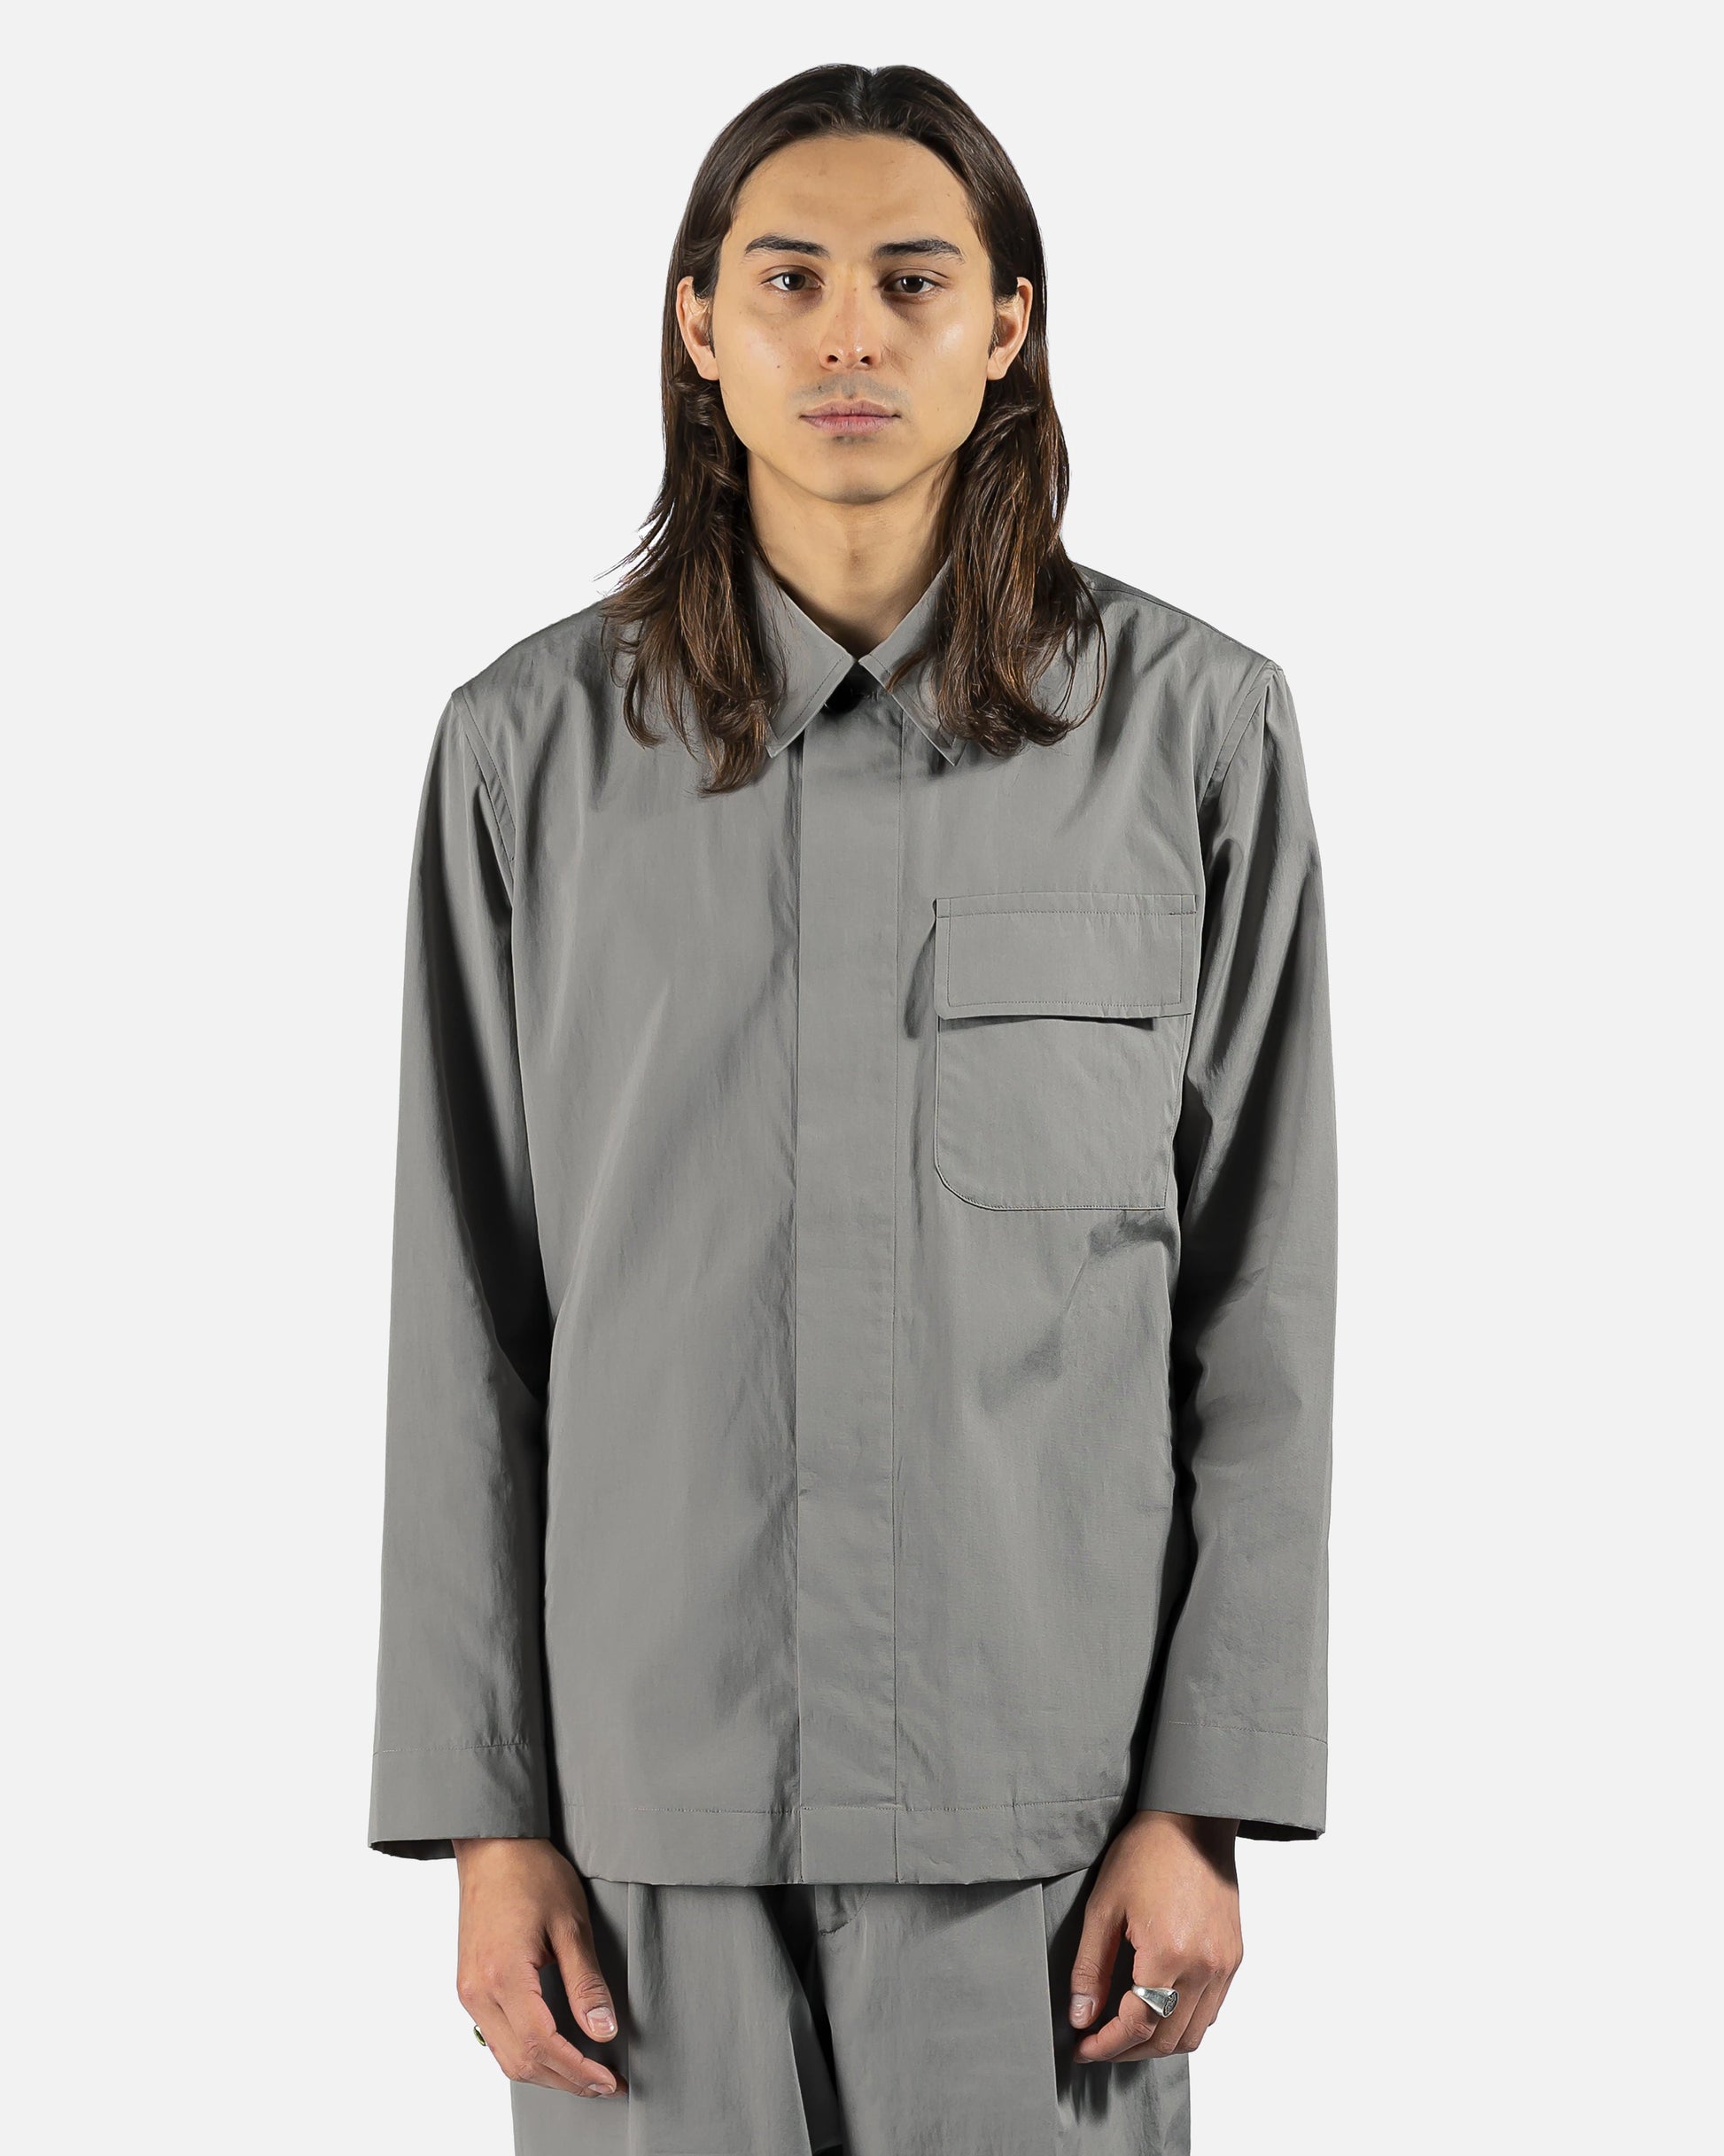 Dries Van Noten Men's Shirts Cadin Shirt in Grey